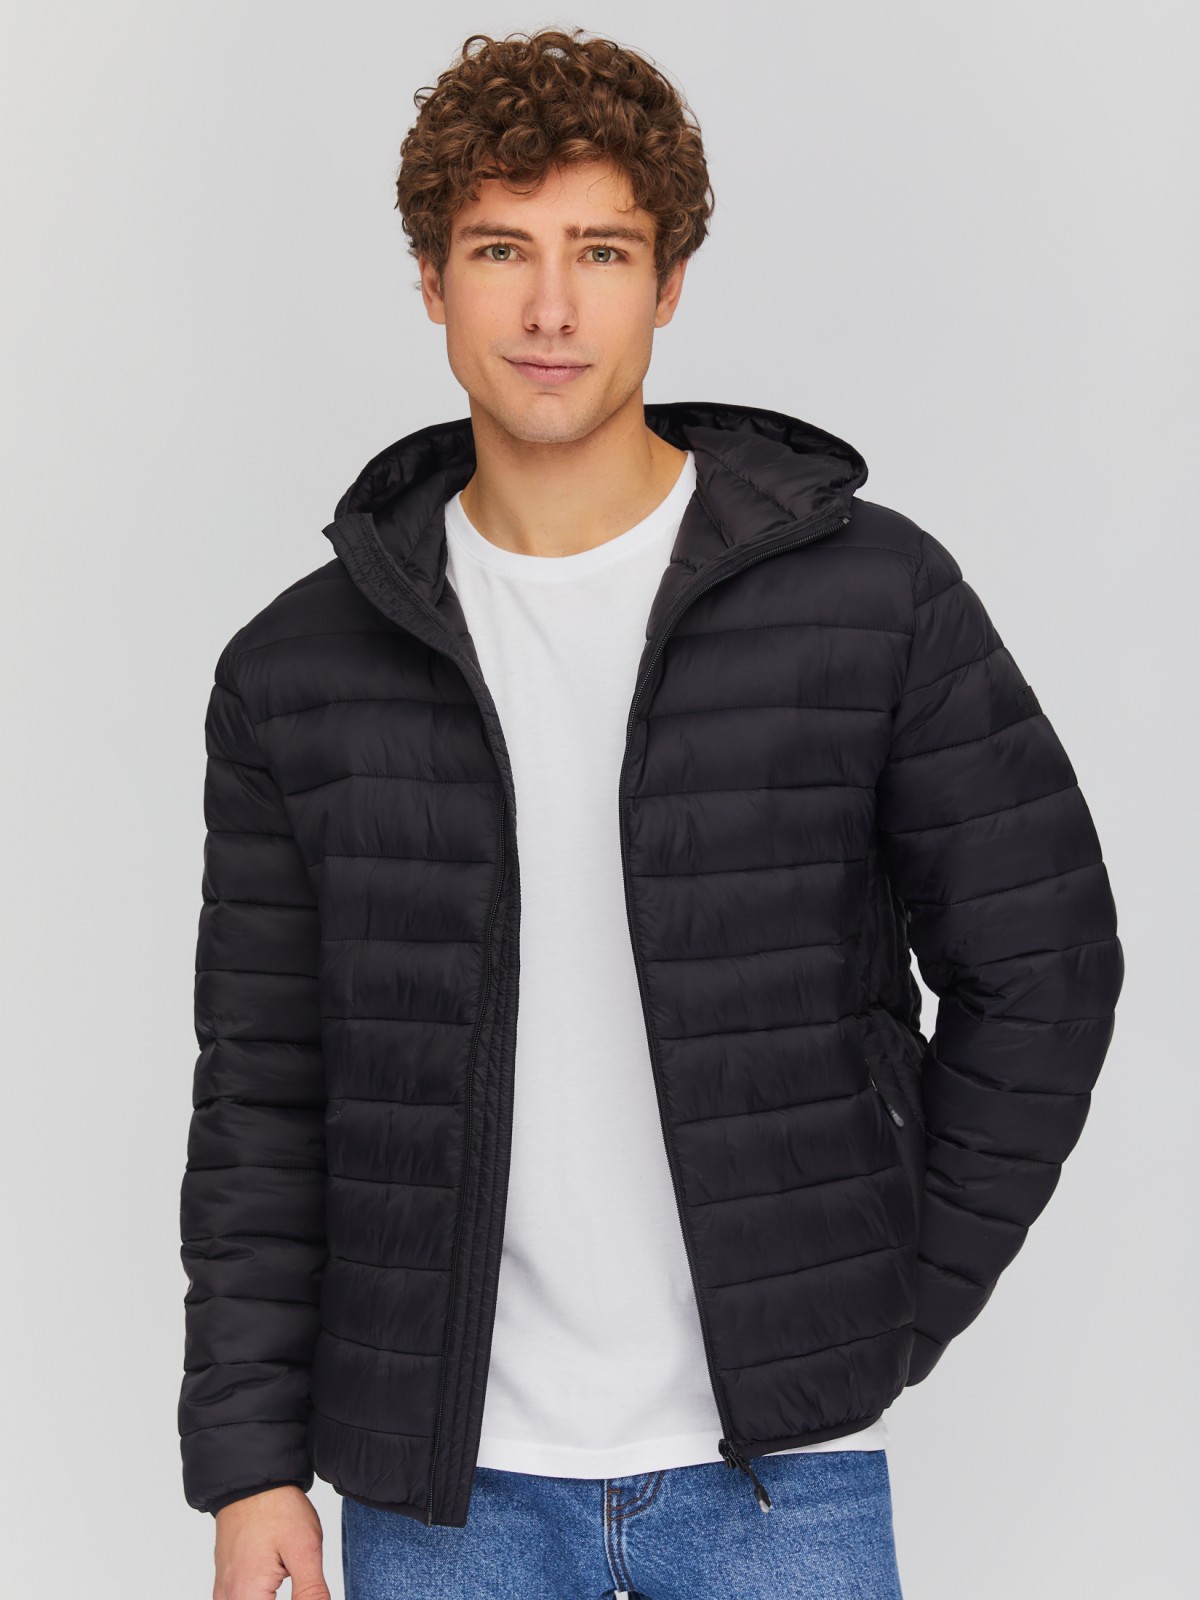 Лёгкая утеплённая стёганая куртка на молнии с капюшоном zolla 01412512N074, цвет черный, размер S